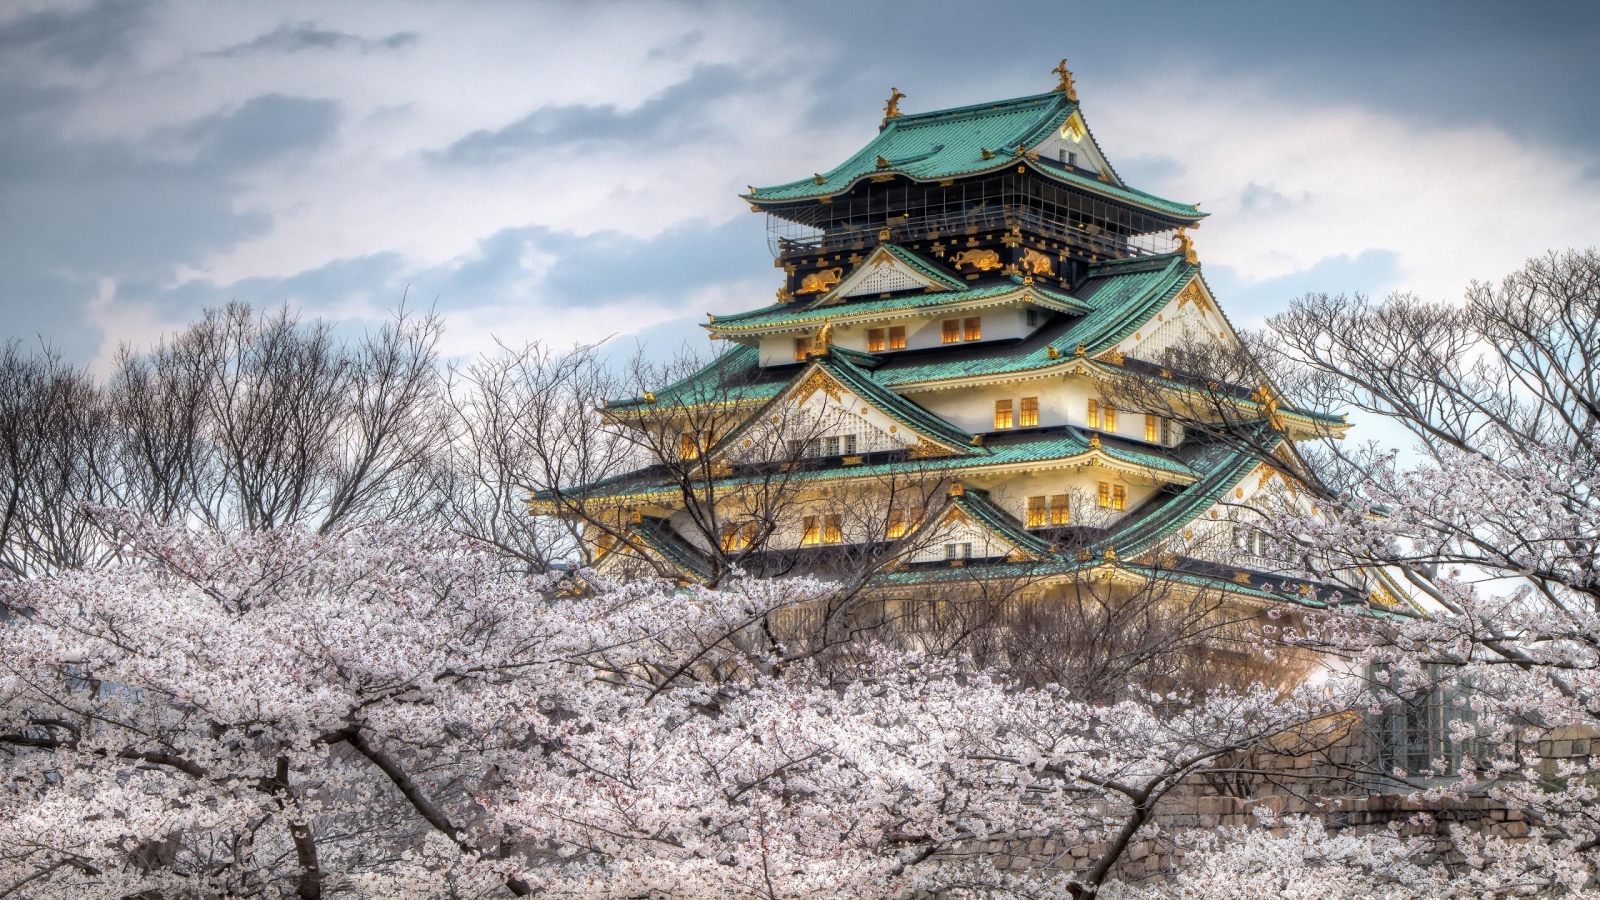 Osaka Castle Japan for 1600 x 900 HDTV resolution